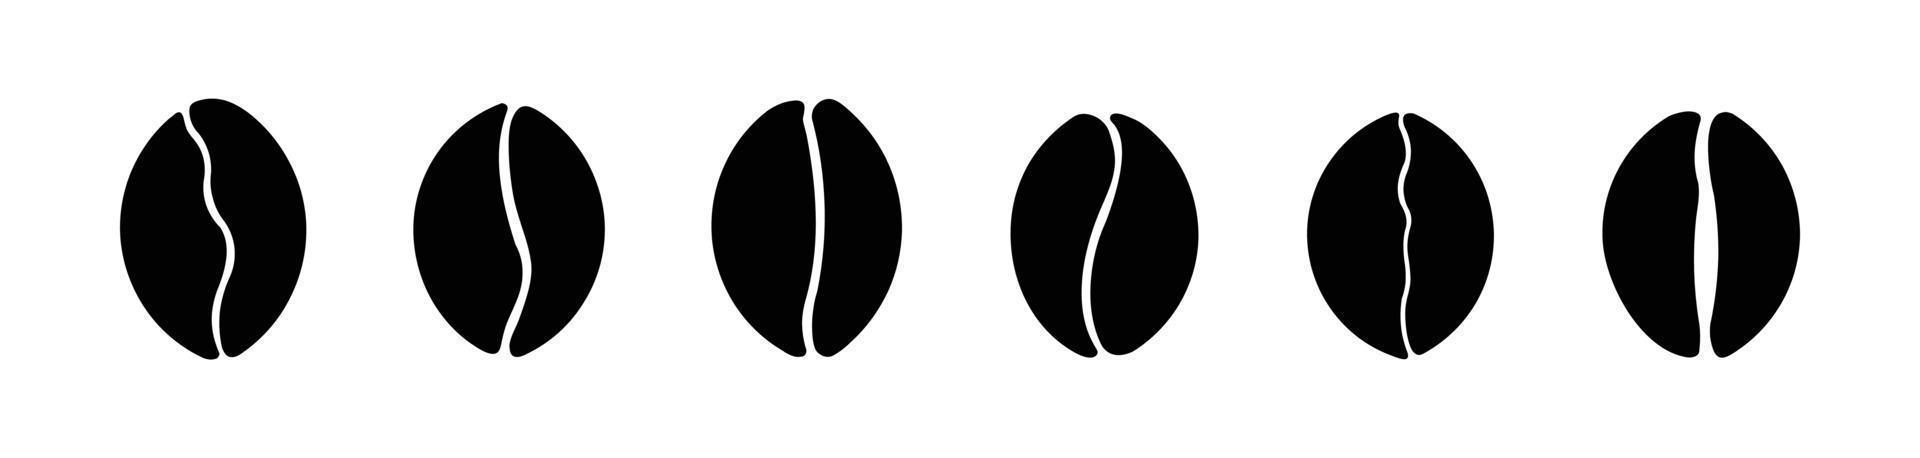 jeu d'icônes de grains de café. illustration vectorielle, illustration d'icône plate isolée de grains de café. vecteur